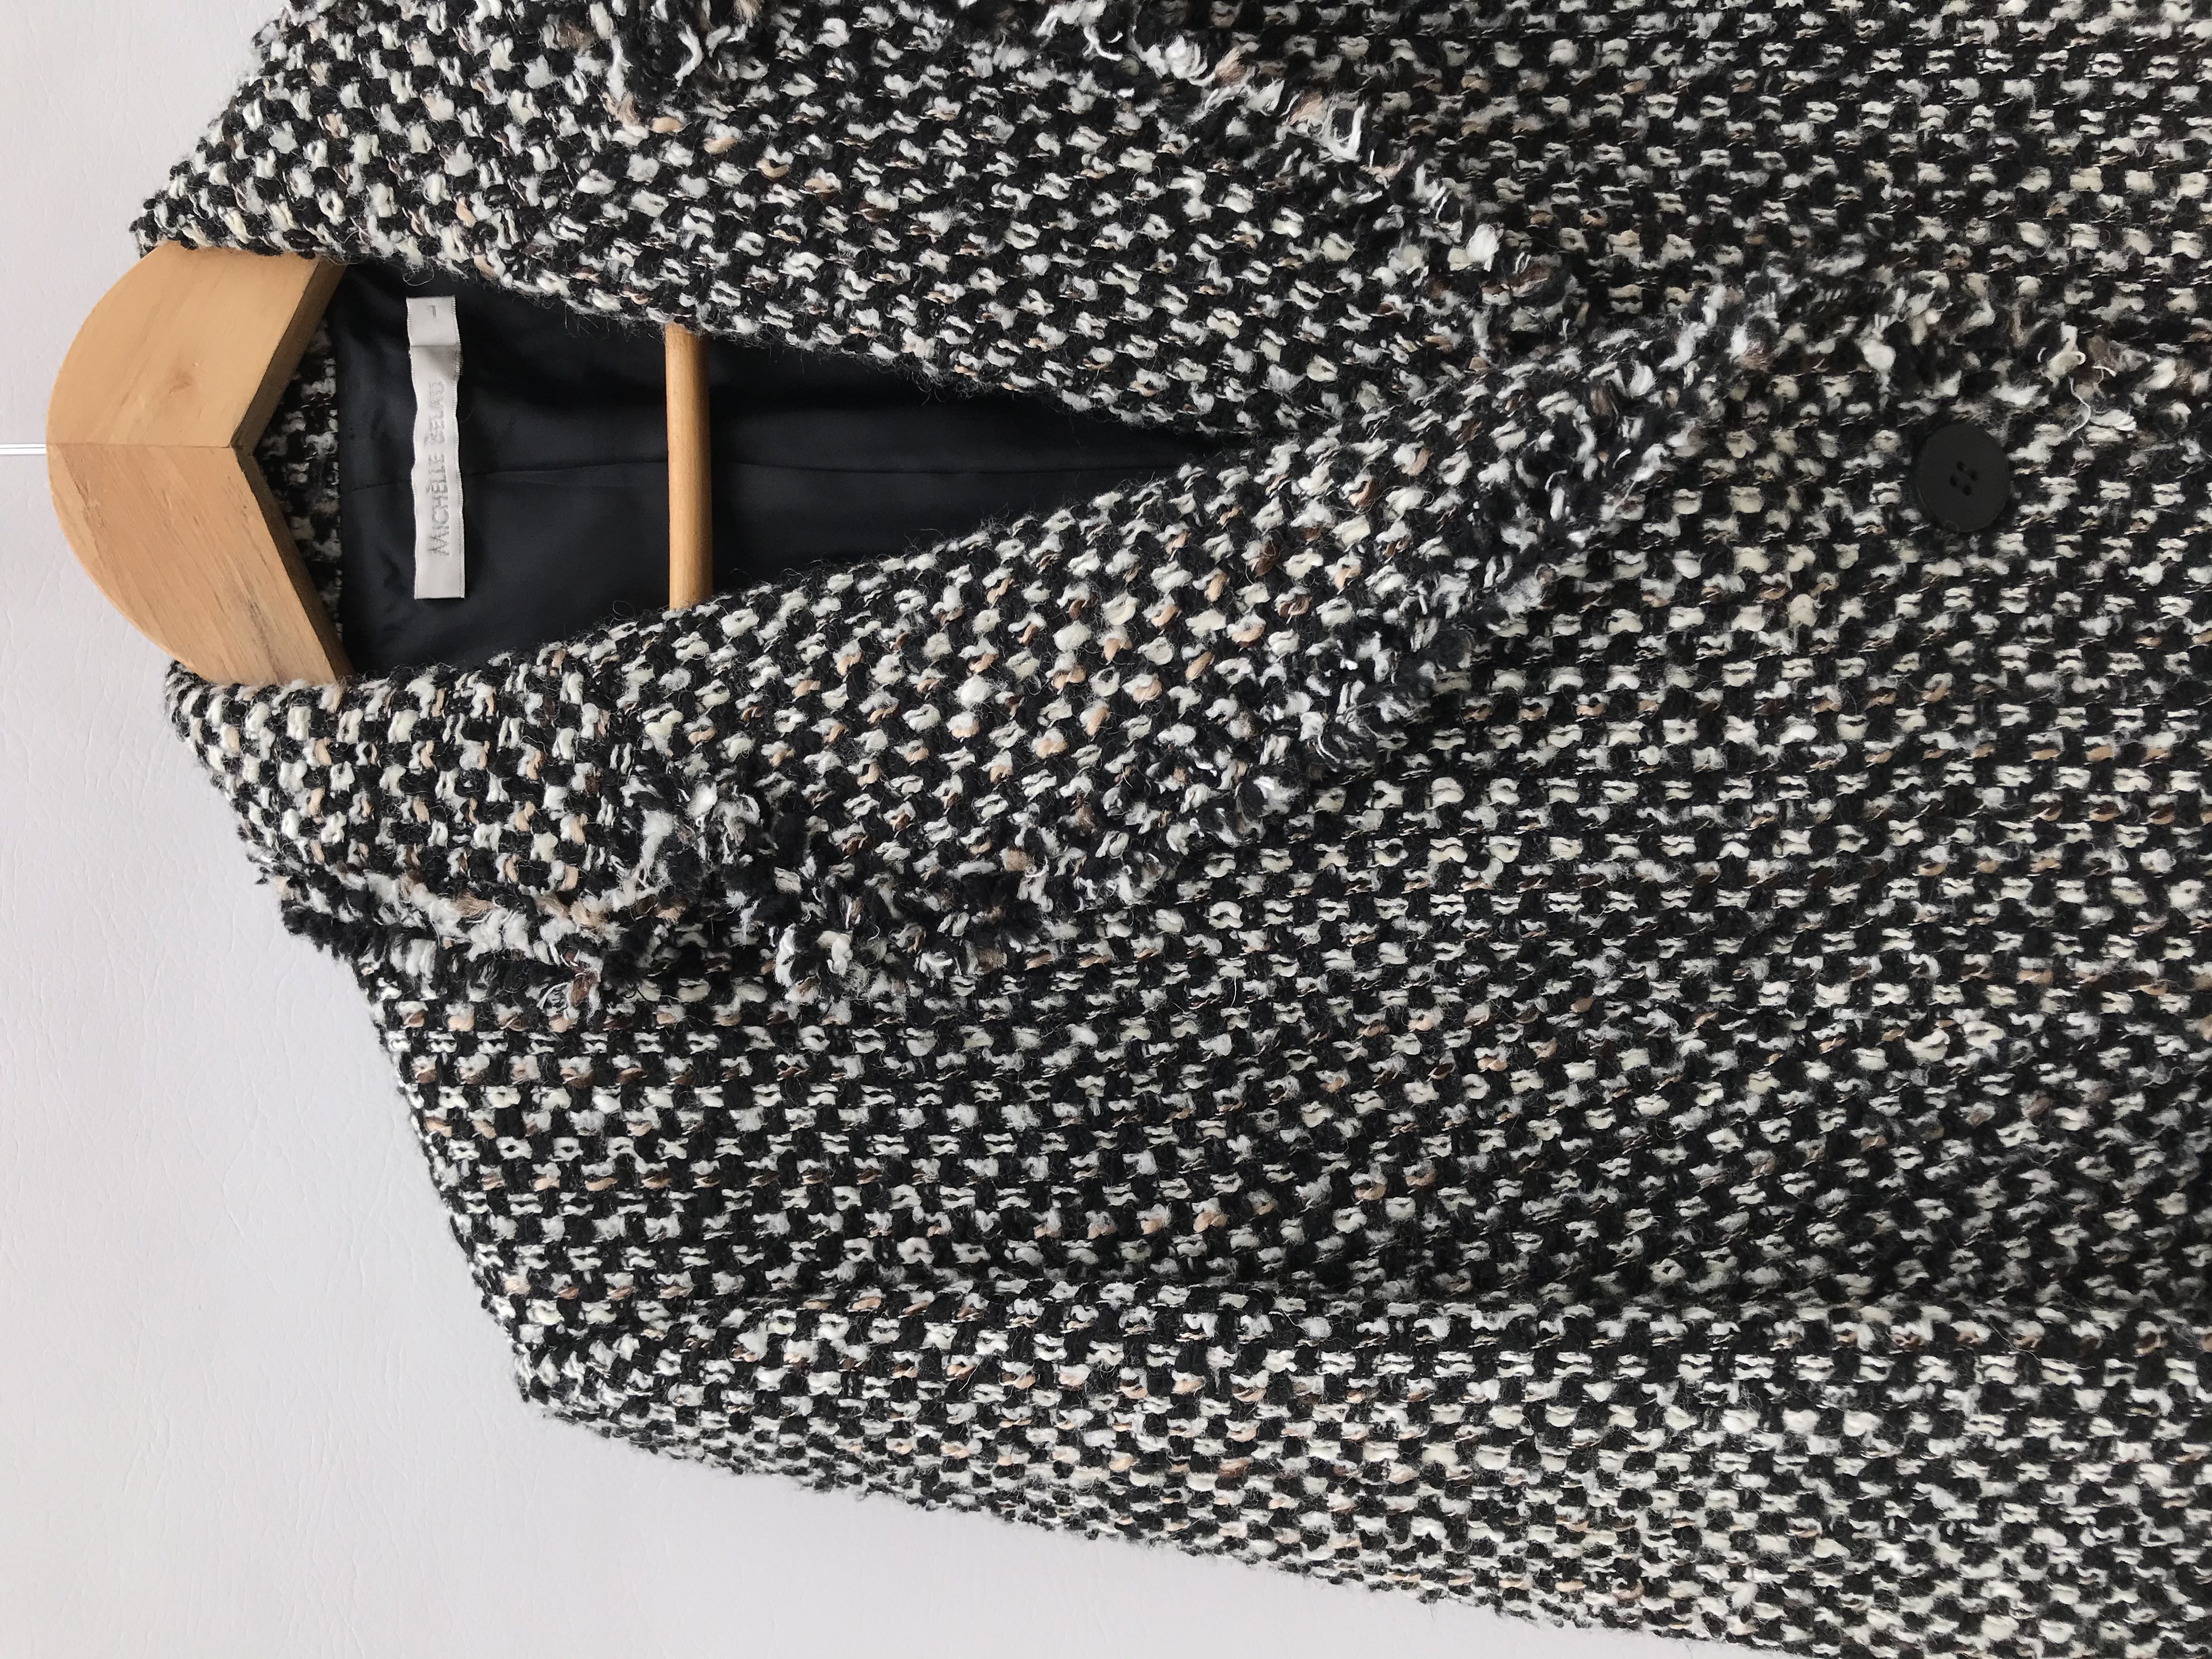 Abrigo Michelle Belau tipo tweed en tonos crema, negro y marrón, forrado, de un solo botón y bolsillos delanteros. Precio original S/ 350